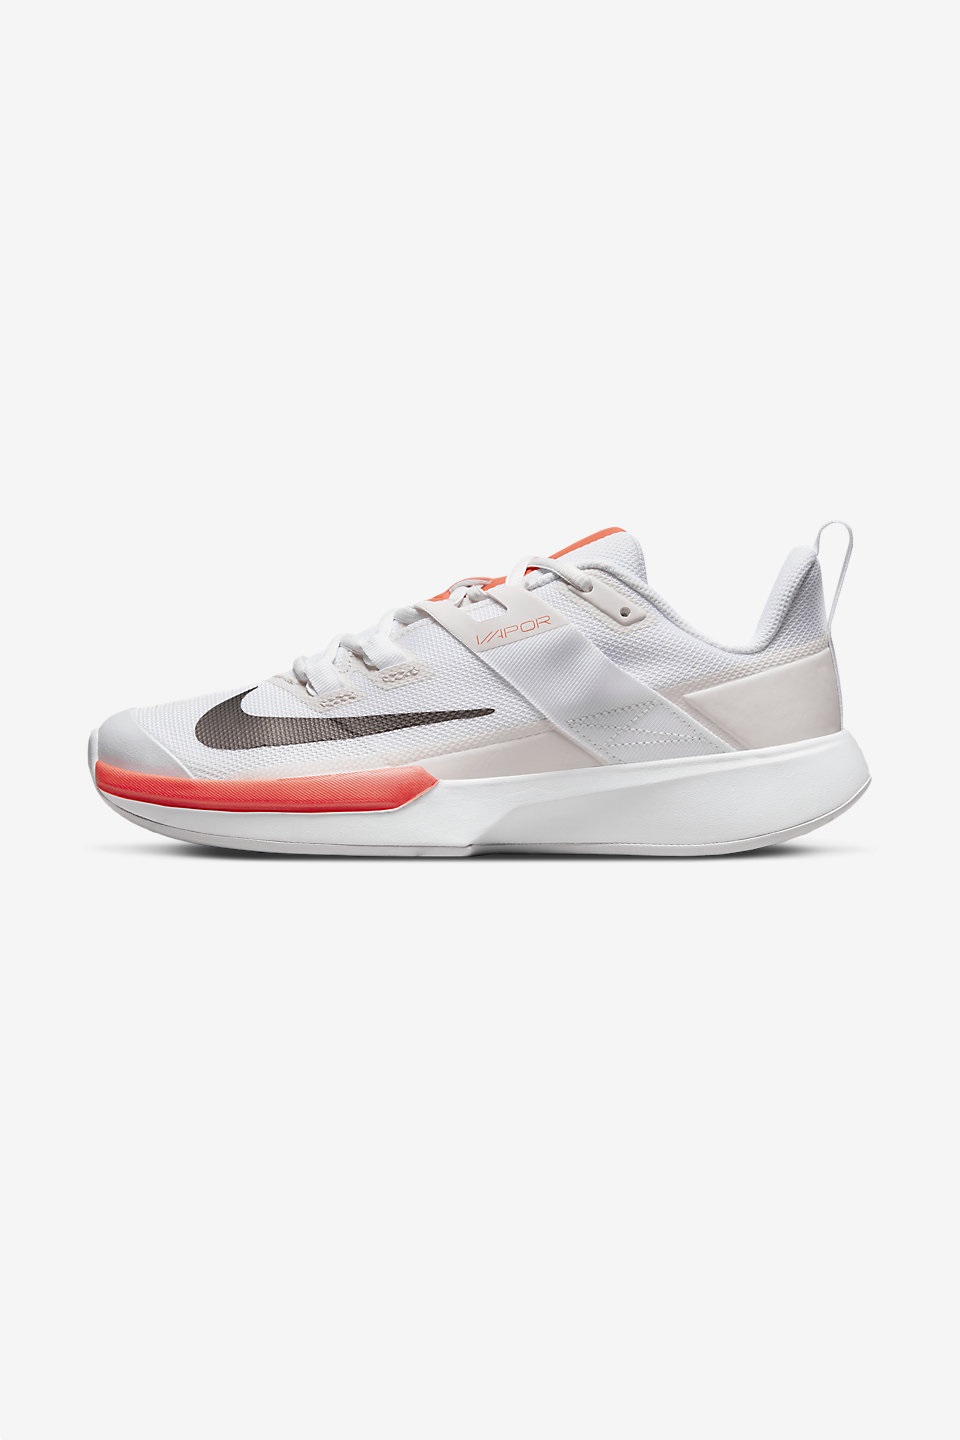 NIKE - Nike Court Vapor Lite Kadın Tenis Ayakkabısı 